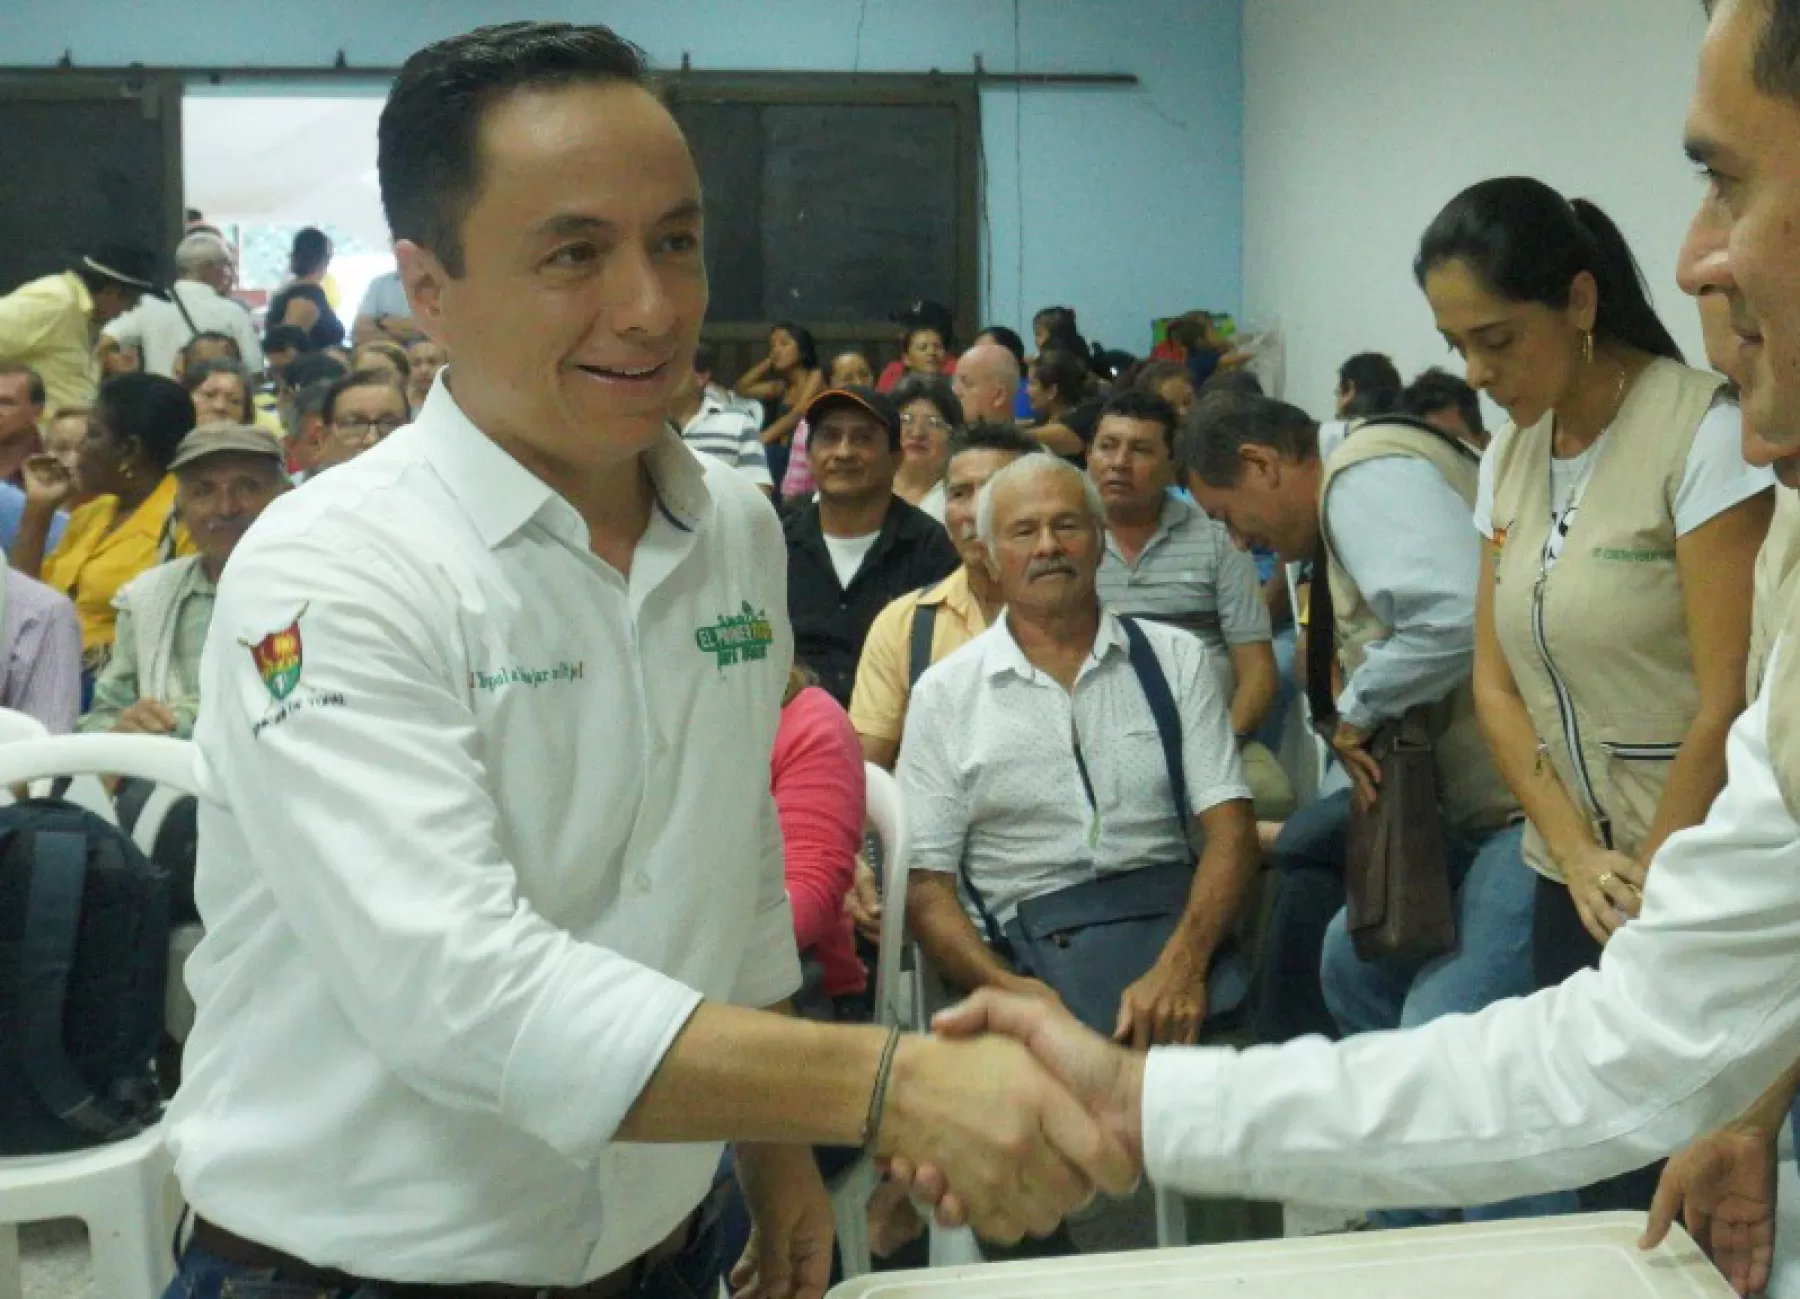 Capturado alcalde de Yopal (Casanare) por presuntas irregularidades en contratación para proveer cargos públicos.